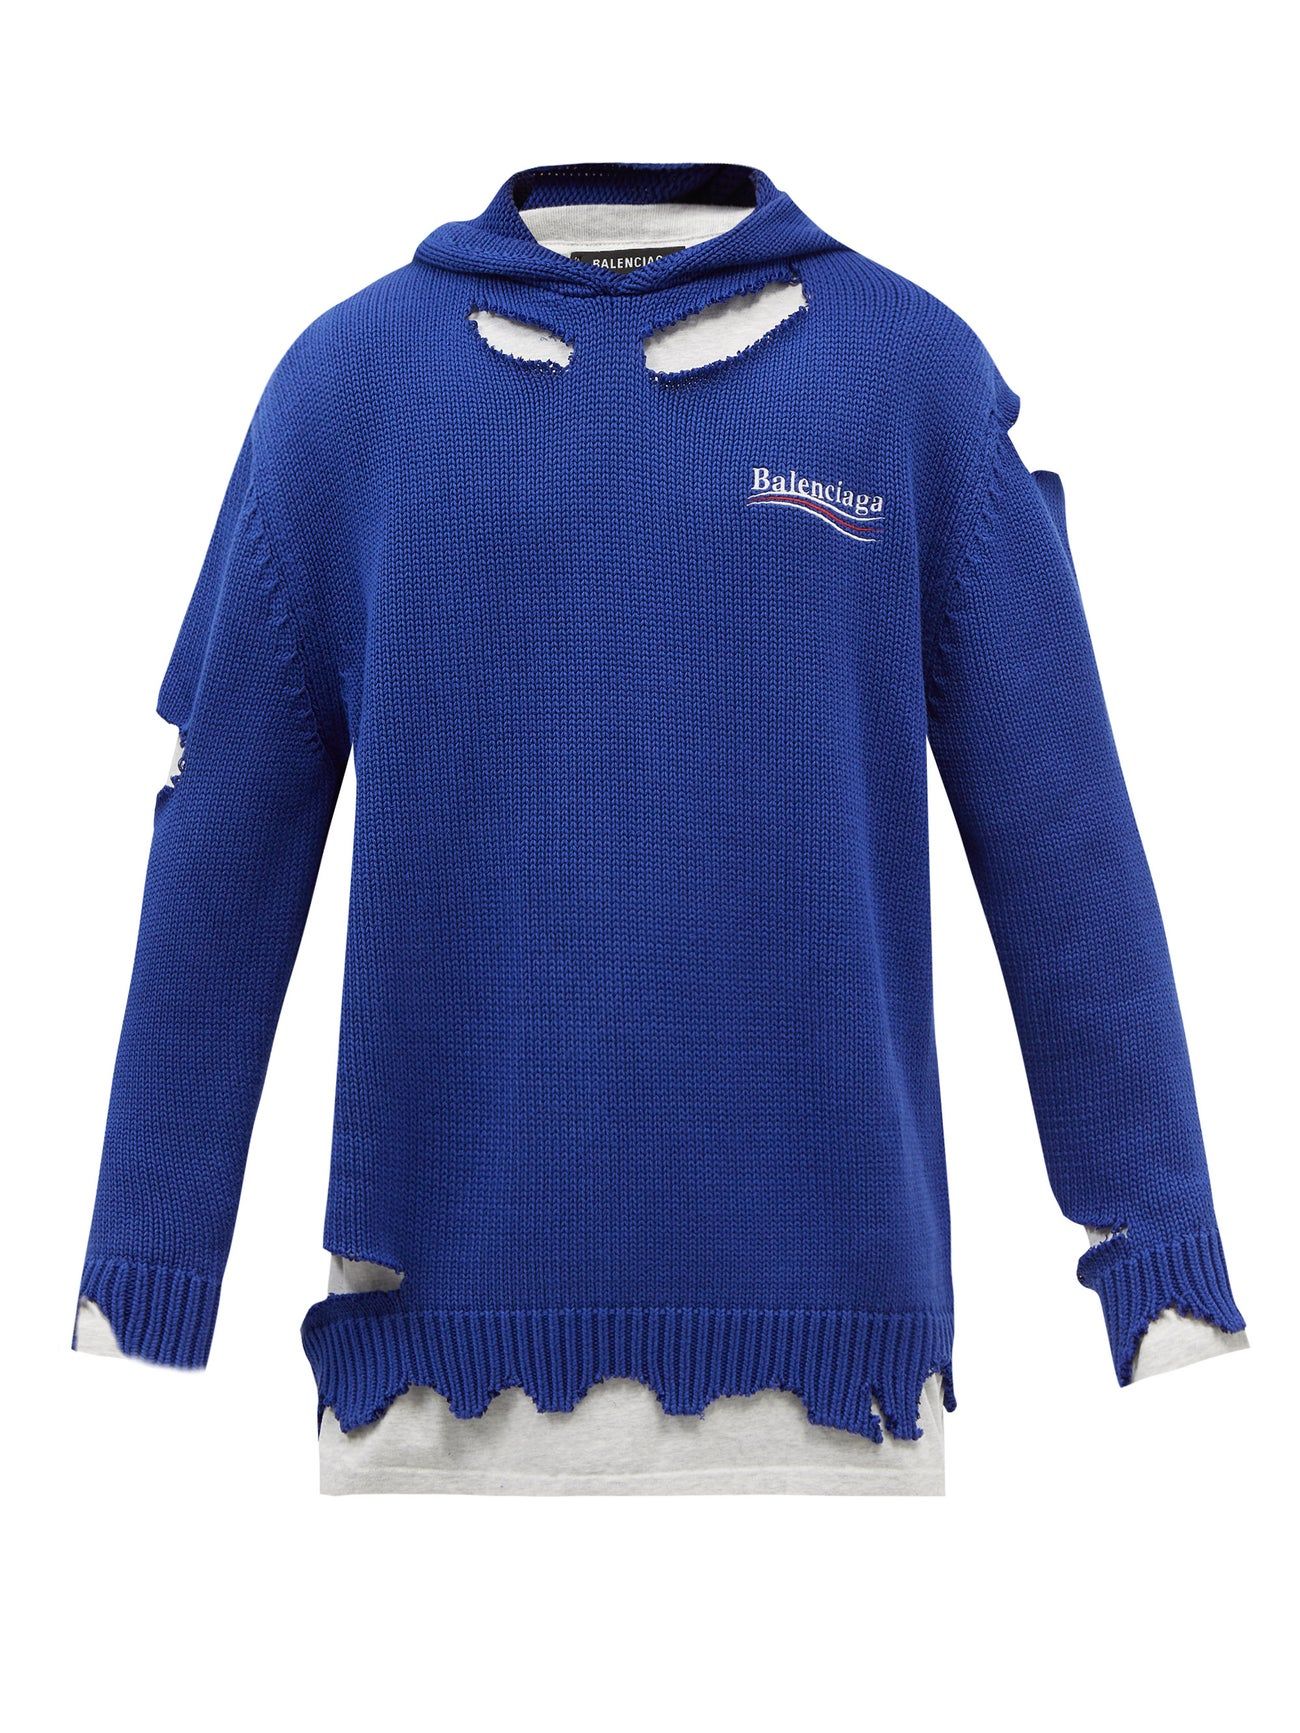 Sweater Balenciaga